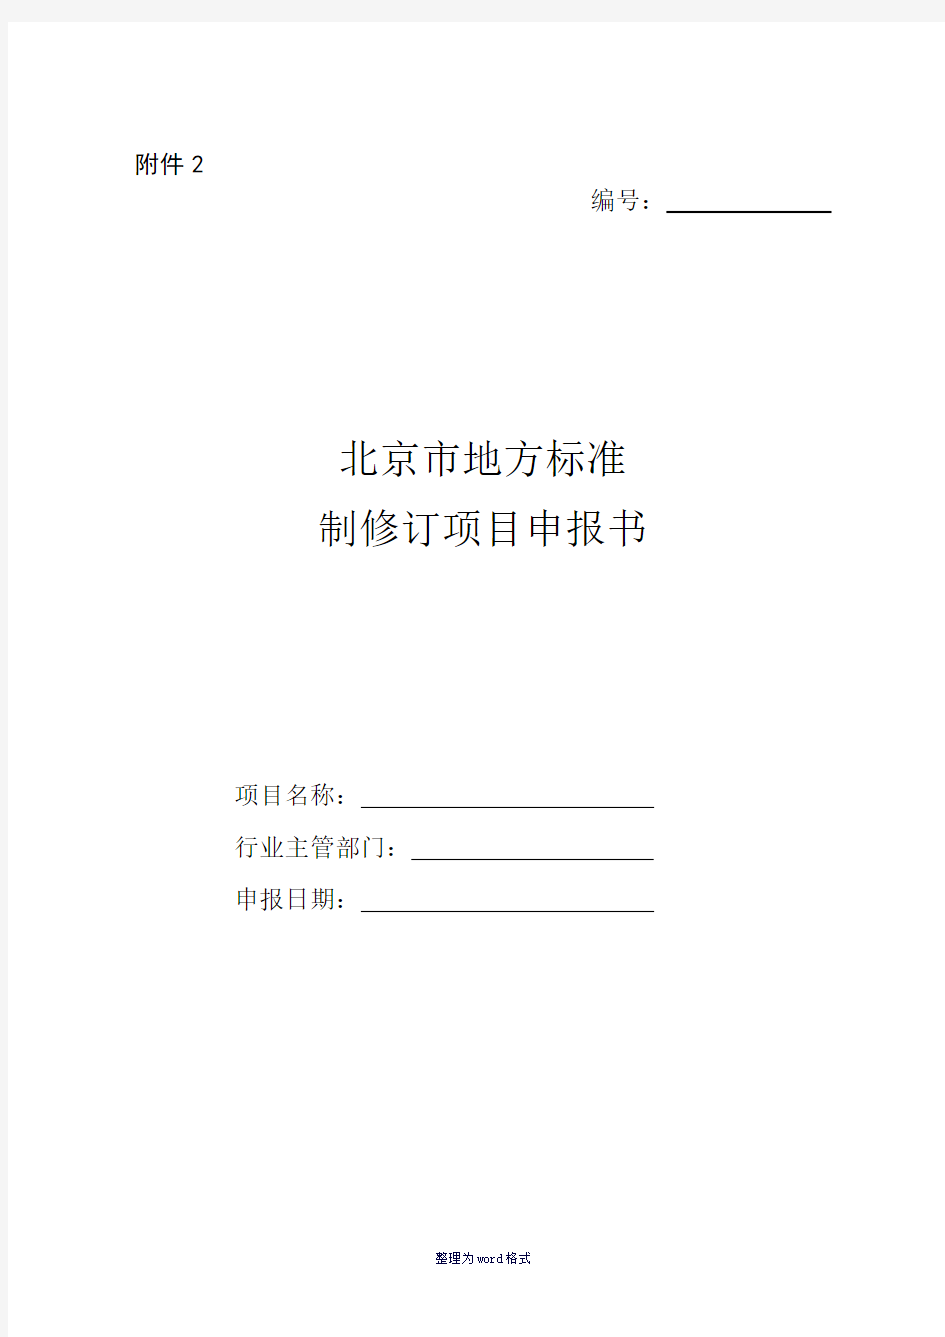 北京市地方标准制修订项目申报书-填写说明Word 文档